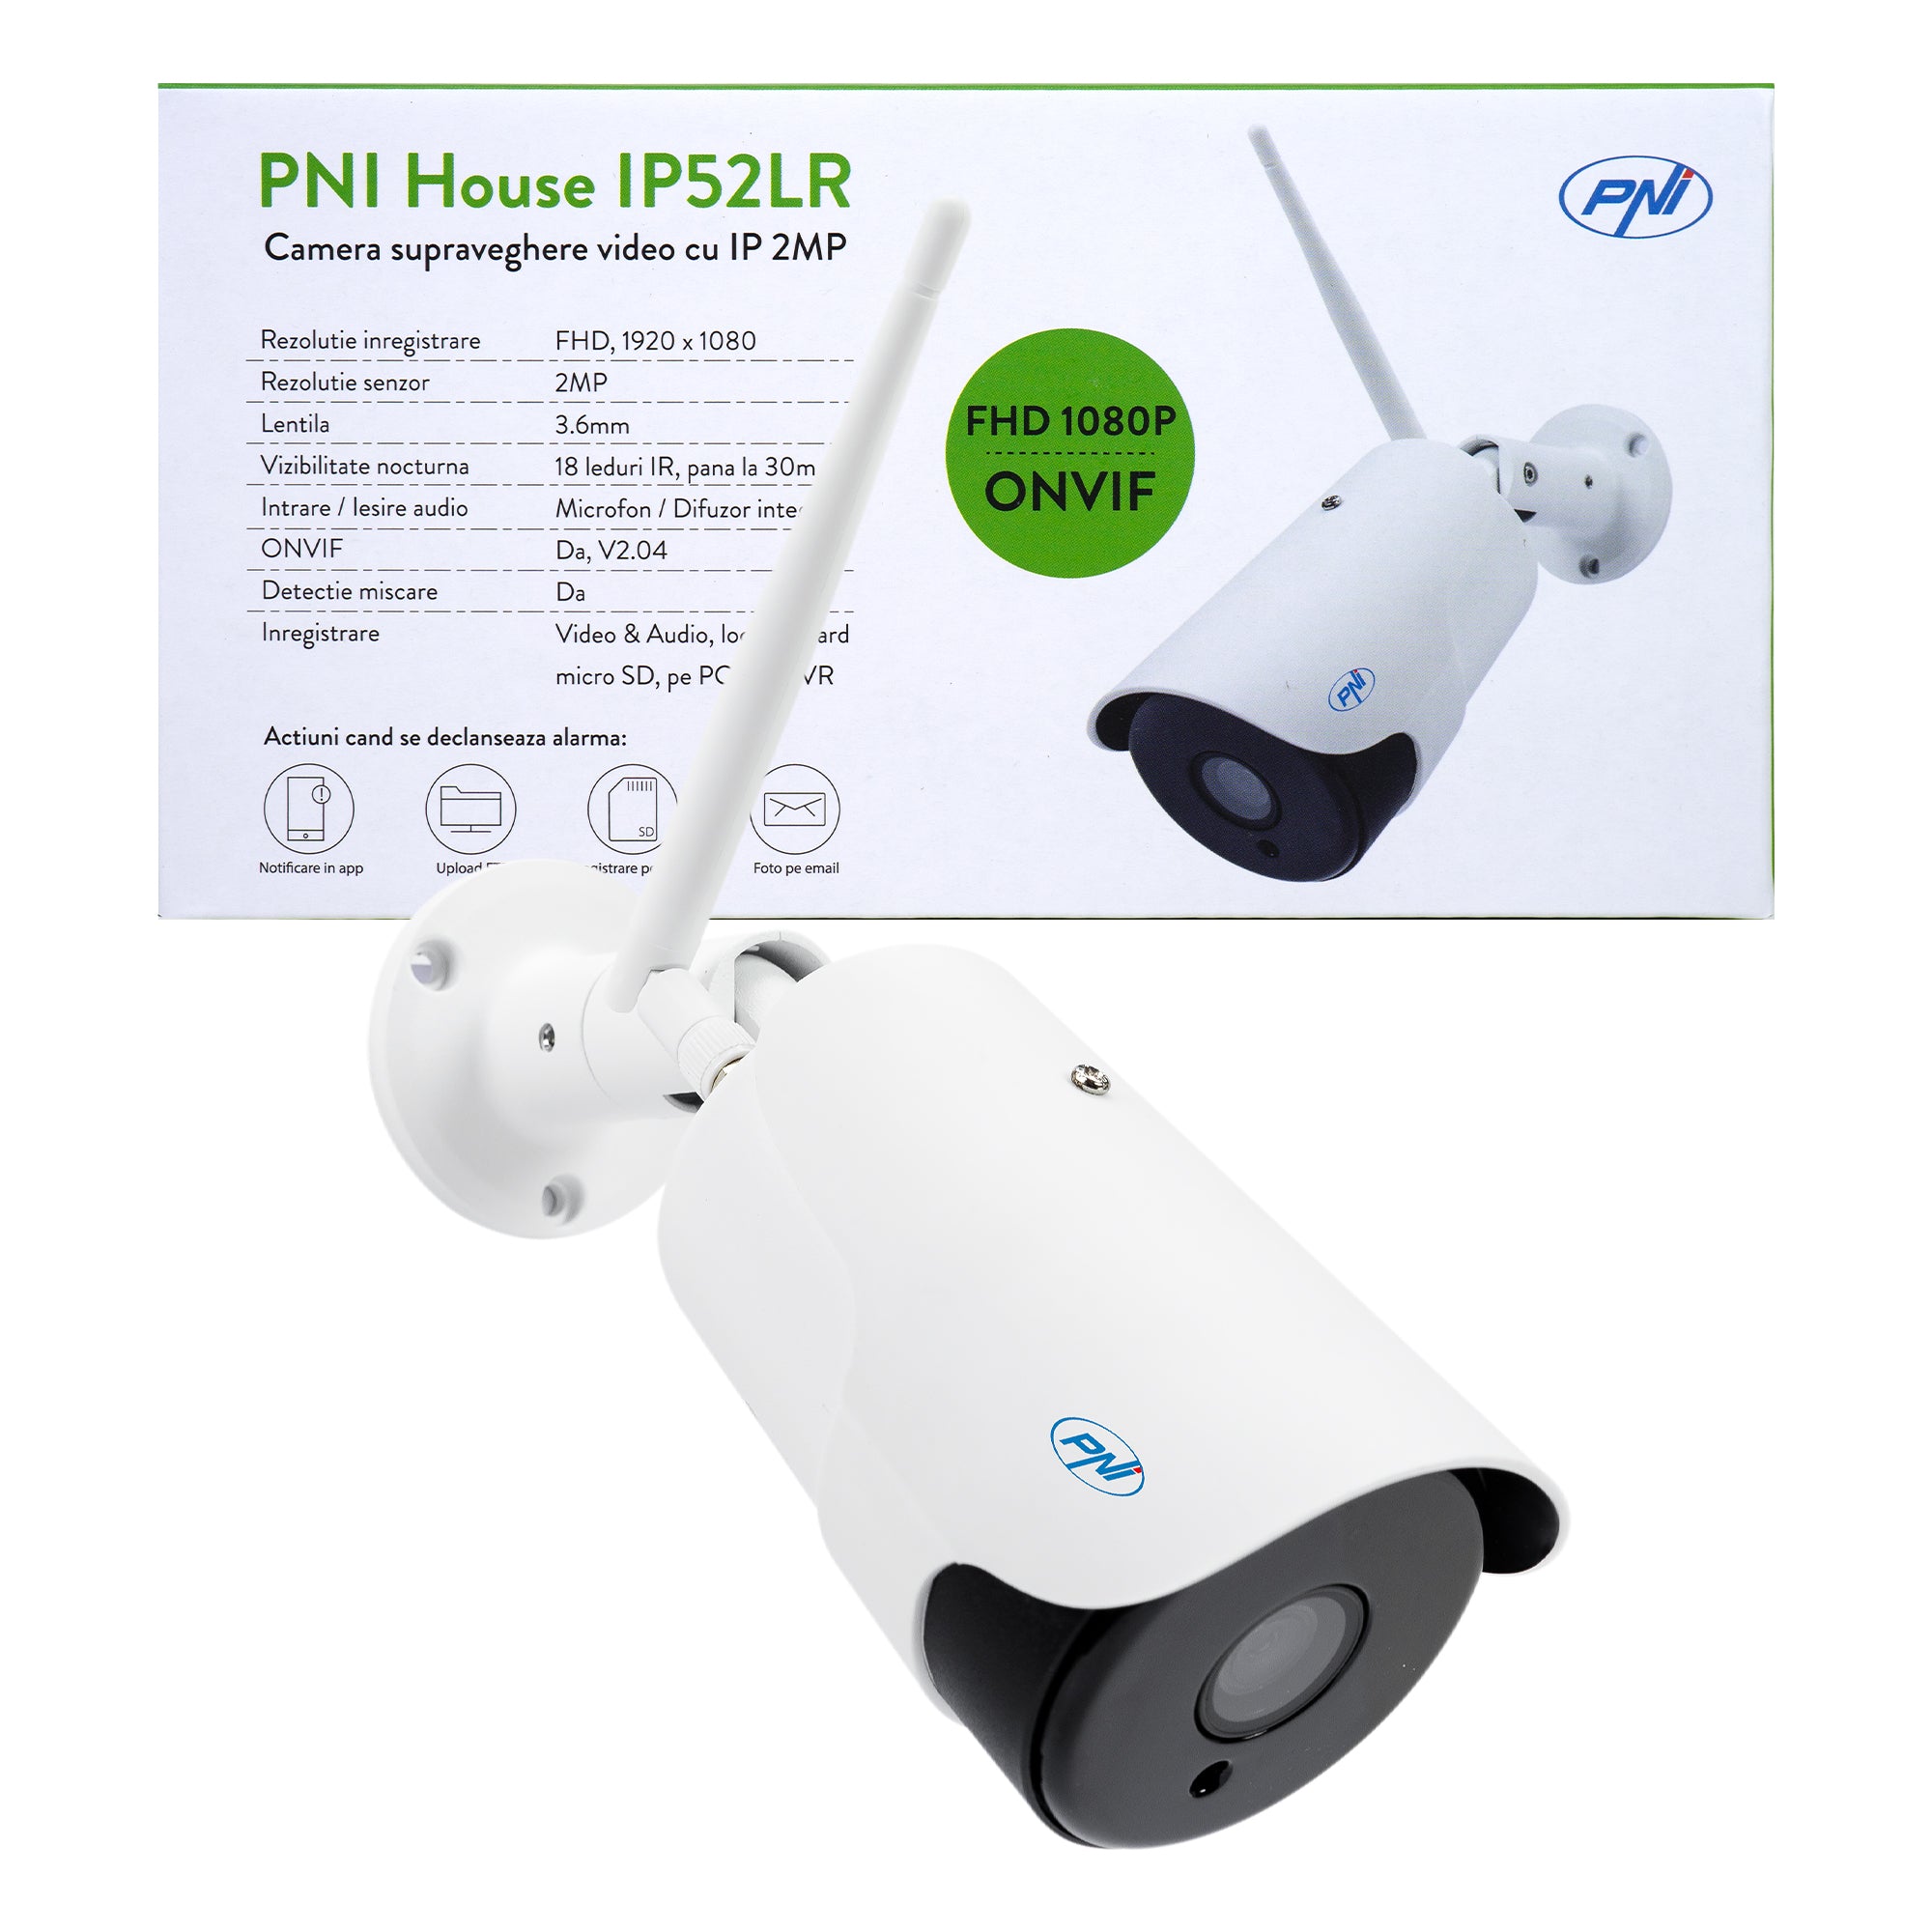 Integration Wait a minute Pirate Camera supraveghere video PNI House IP52LR 2MP 1080P wireless cu IP de